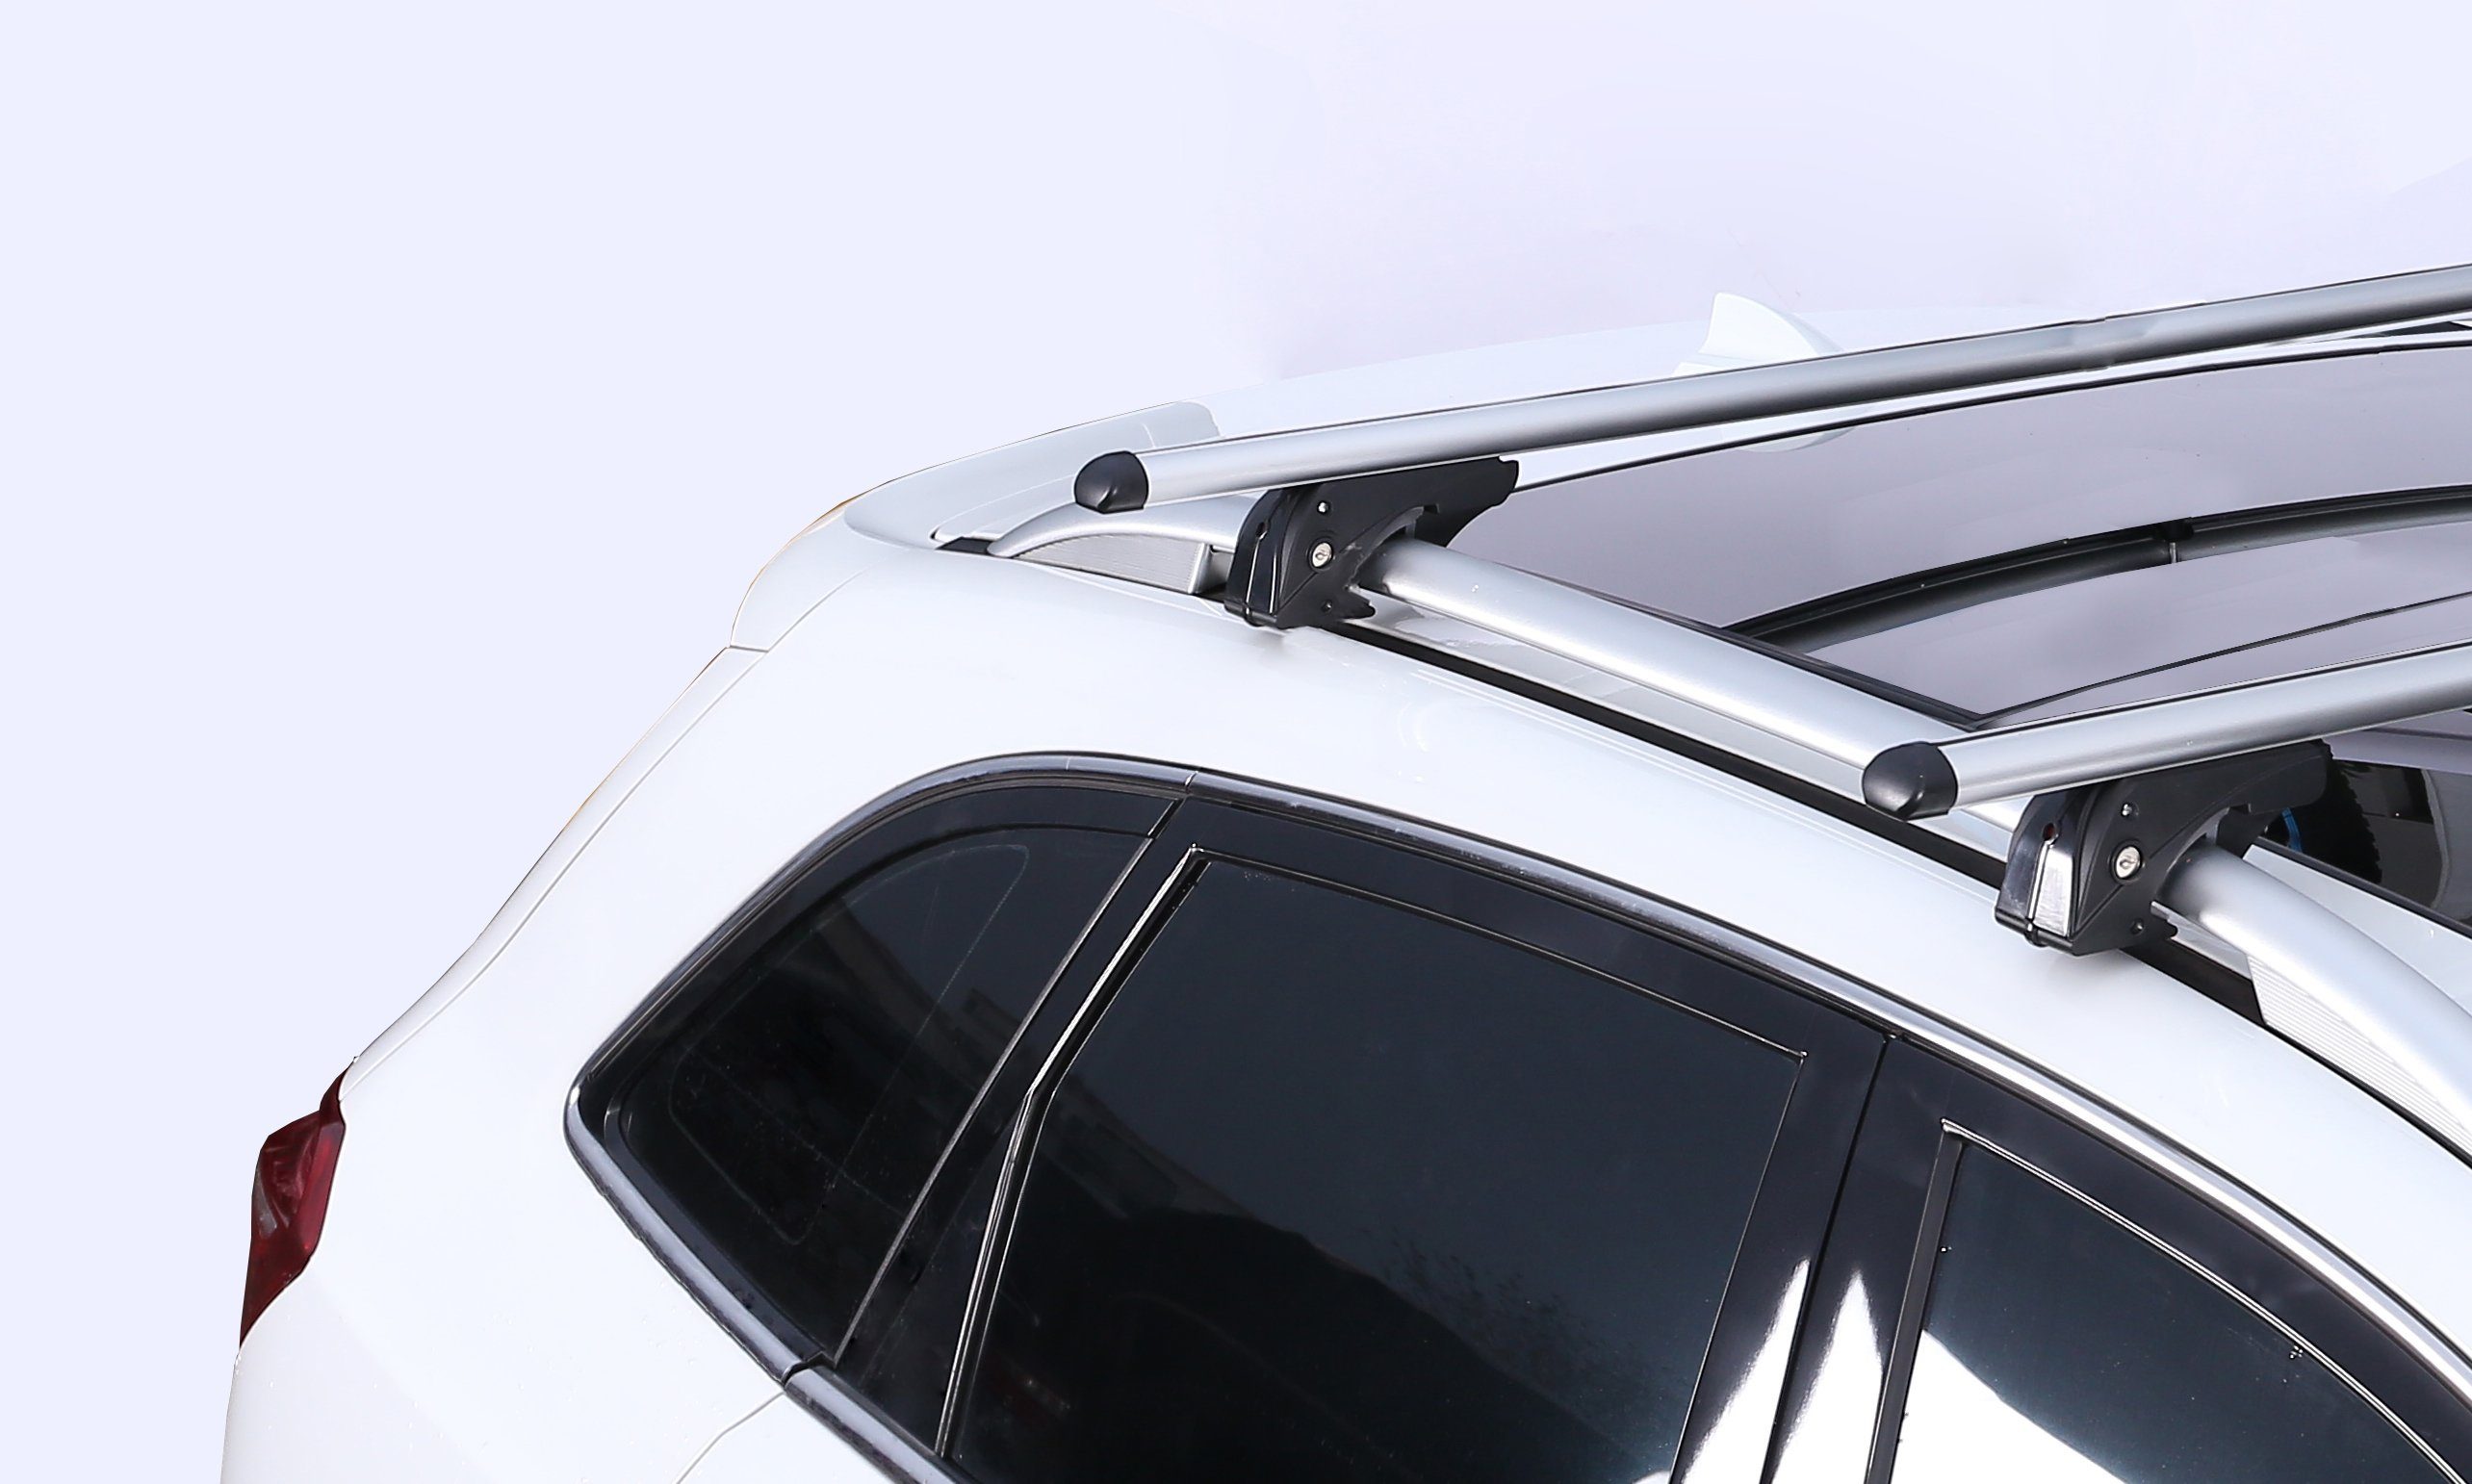 VDP Dachbox, (Für Ihren Dachträger 01-06 und mit 01-06, Ford Mondeo + Dachträger/Relingträger Station Ford (5 Dachbox/Gepäckbox Mondeo VDPLION1 im Türer) CUBE470 Türer) (5 Set), Wagon Kombi Dachbox kompatibel